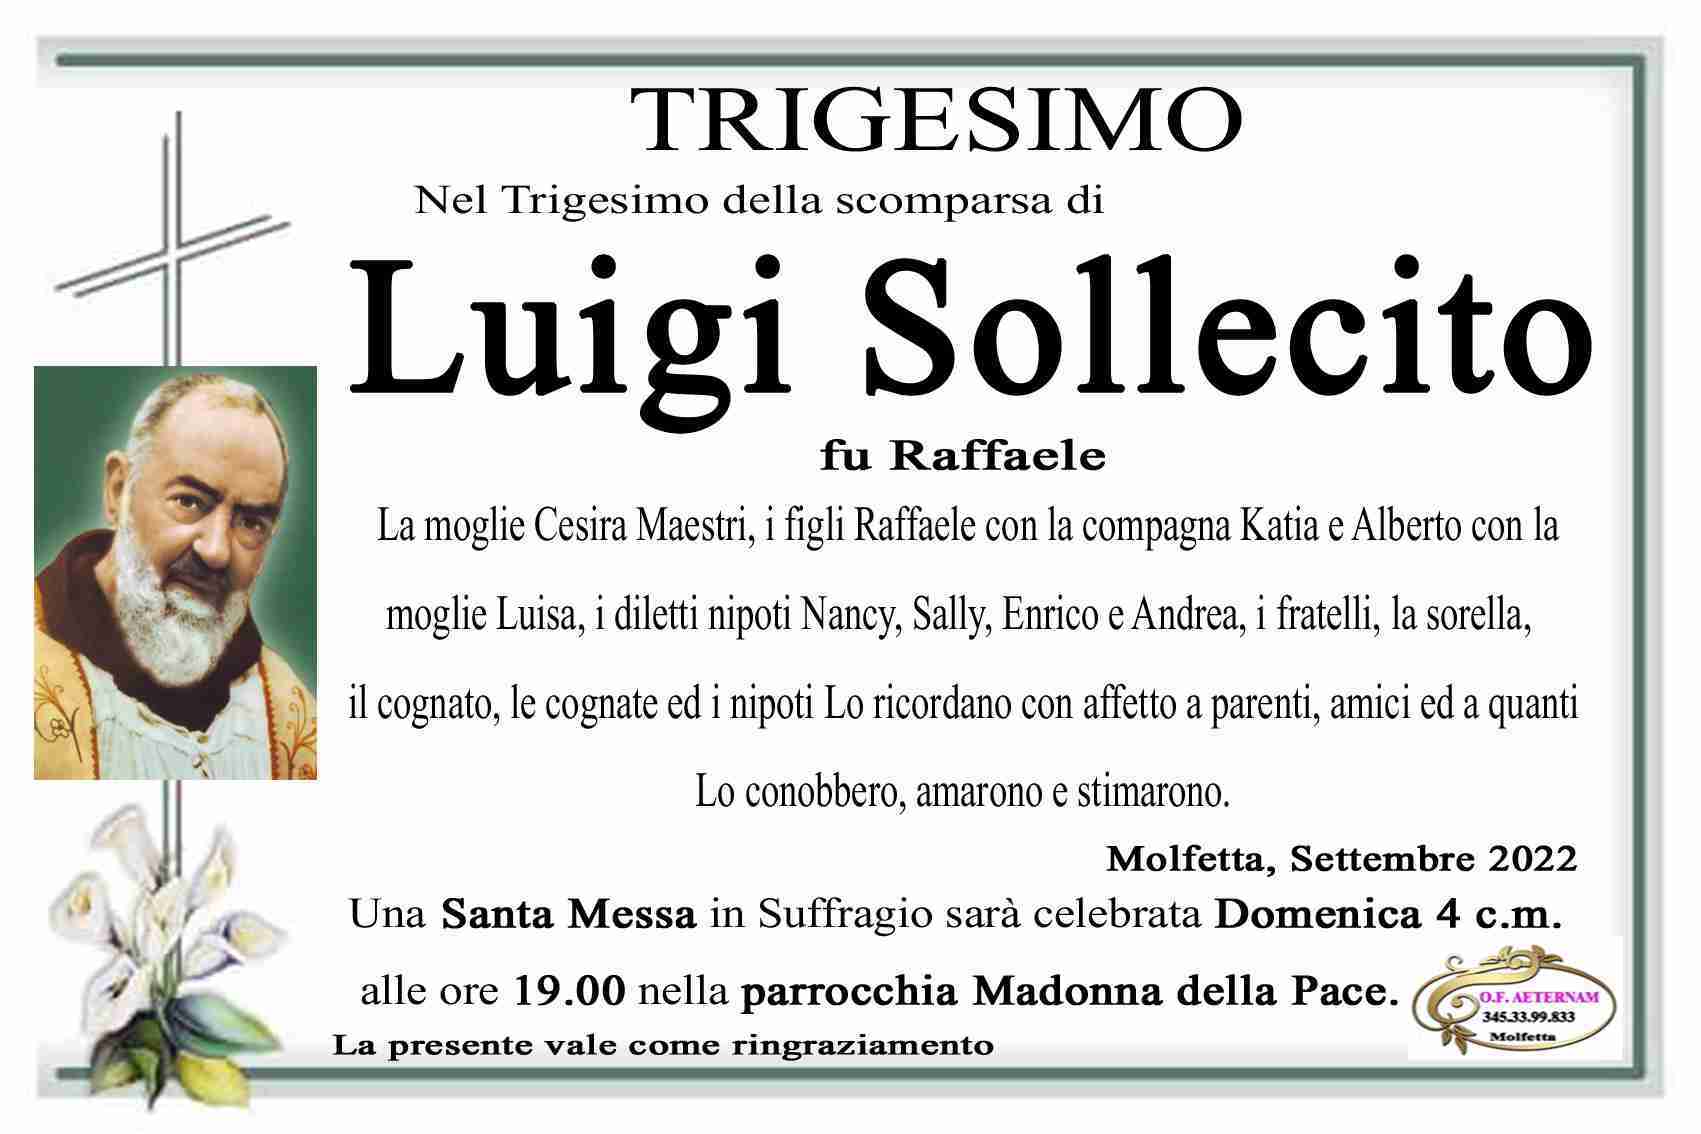 Luigi Sollecito